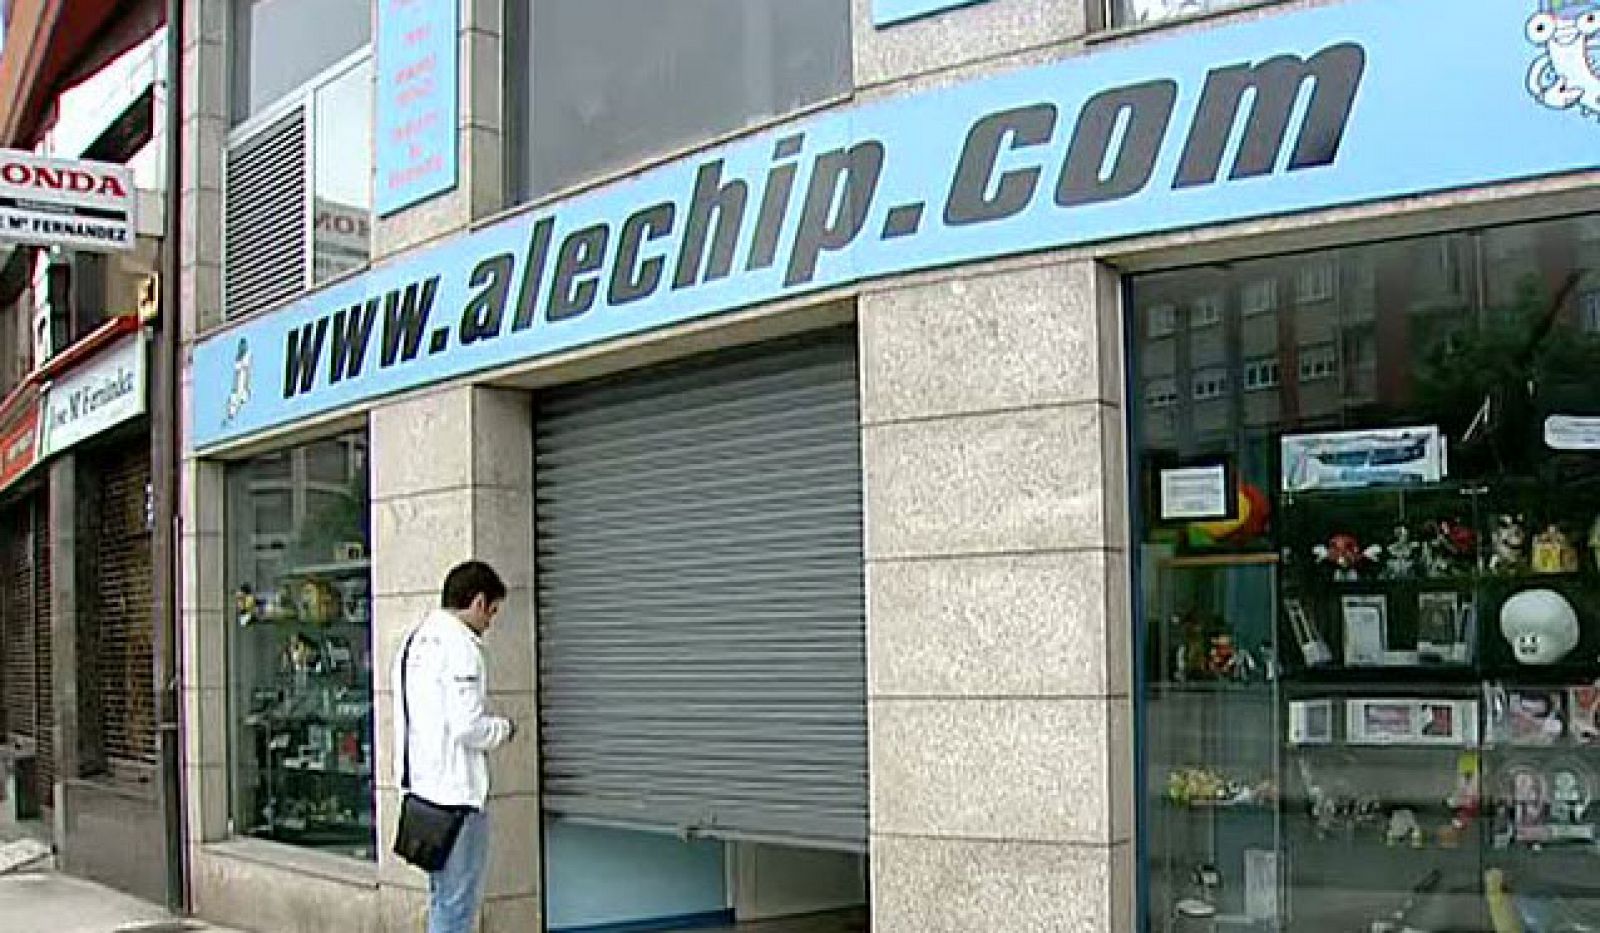 La justicia ha absuelto al propietario de la empresa Alechip, una tienda de videoconsolas y reparación de teléfonos móviles en Avilés acusada por vender cartuchos para la DS.